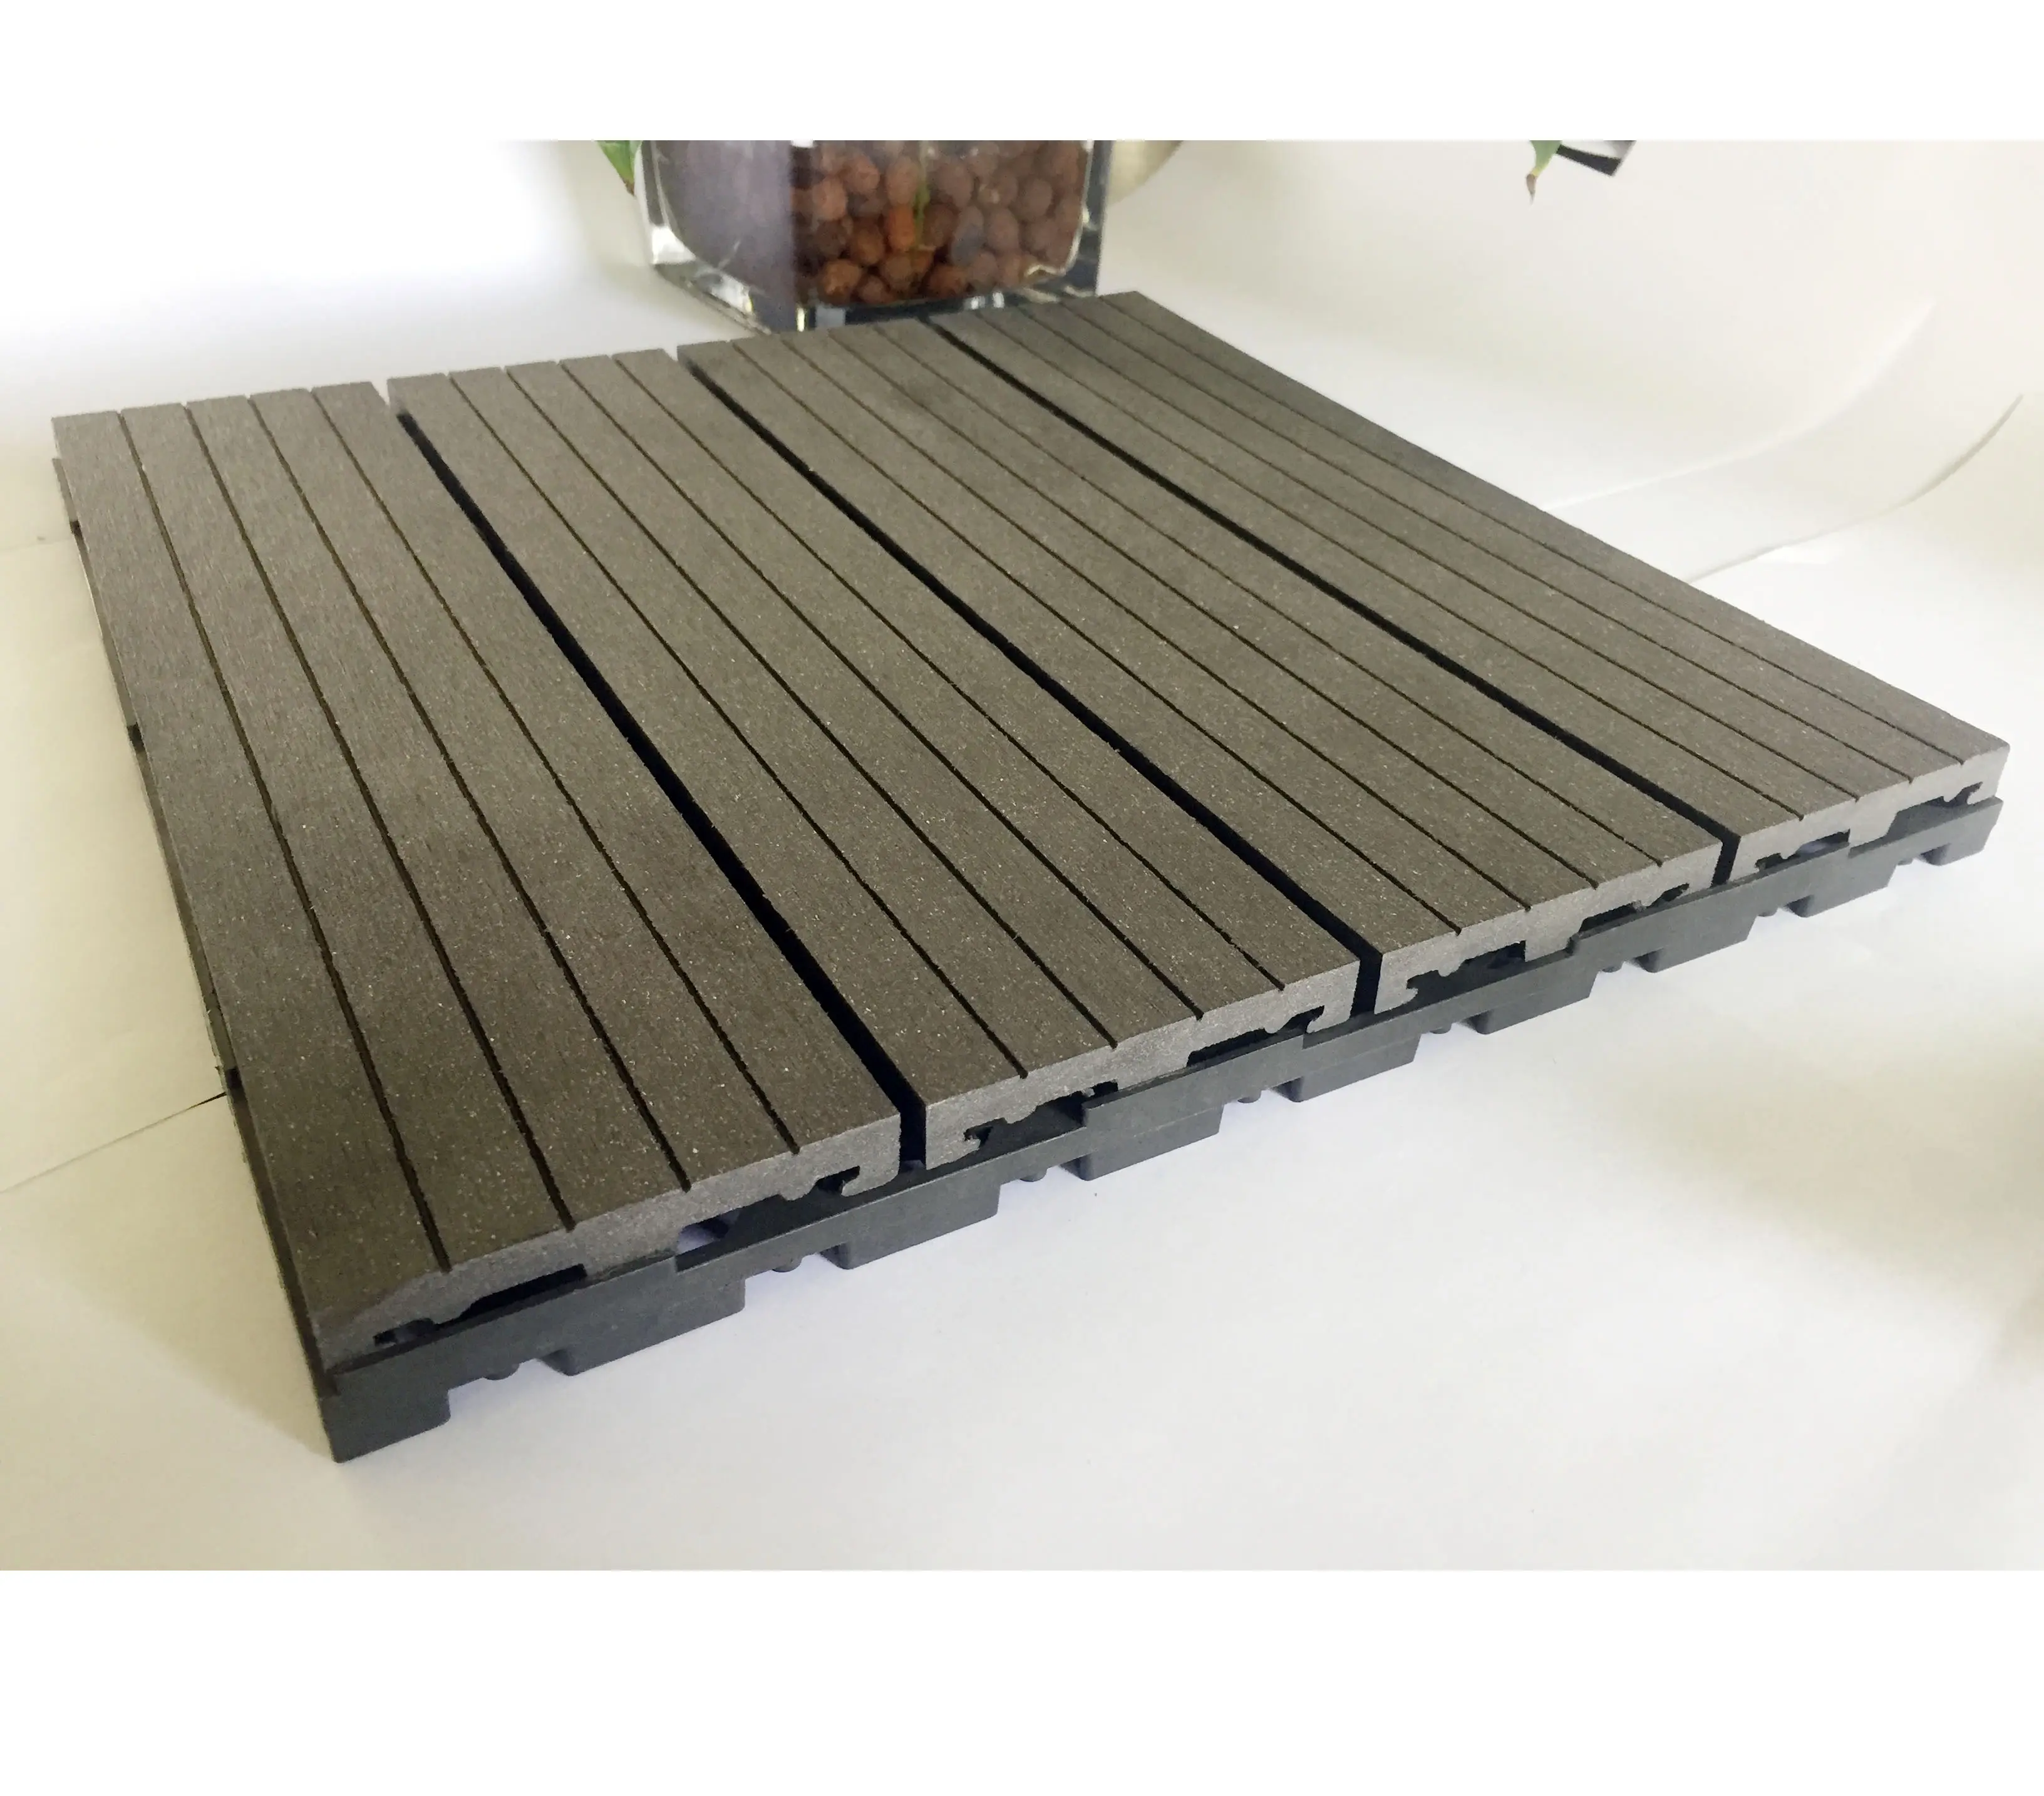 Wood composite interlocking decking tile 12"-12" WPC DIY tiles waterproof pavement floor outdoor patio garden terrace tiles